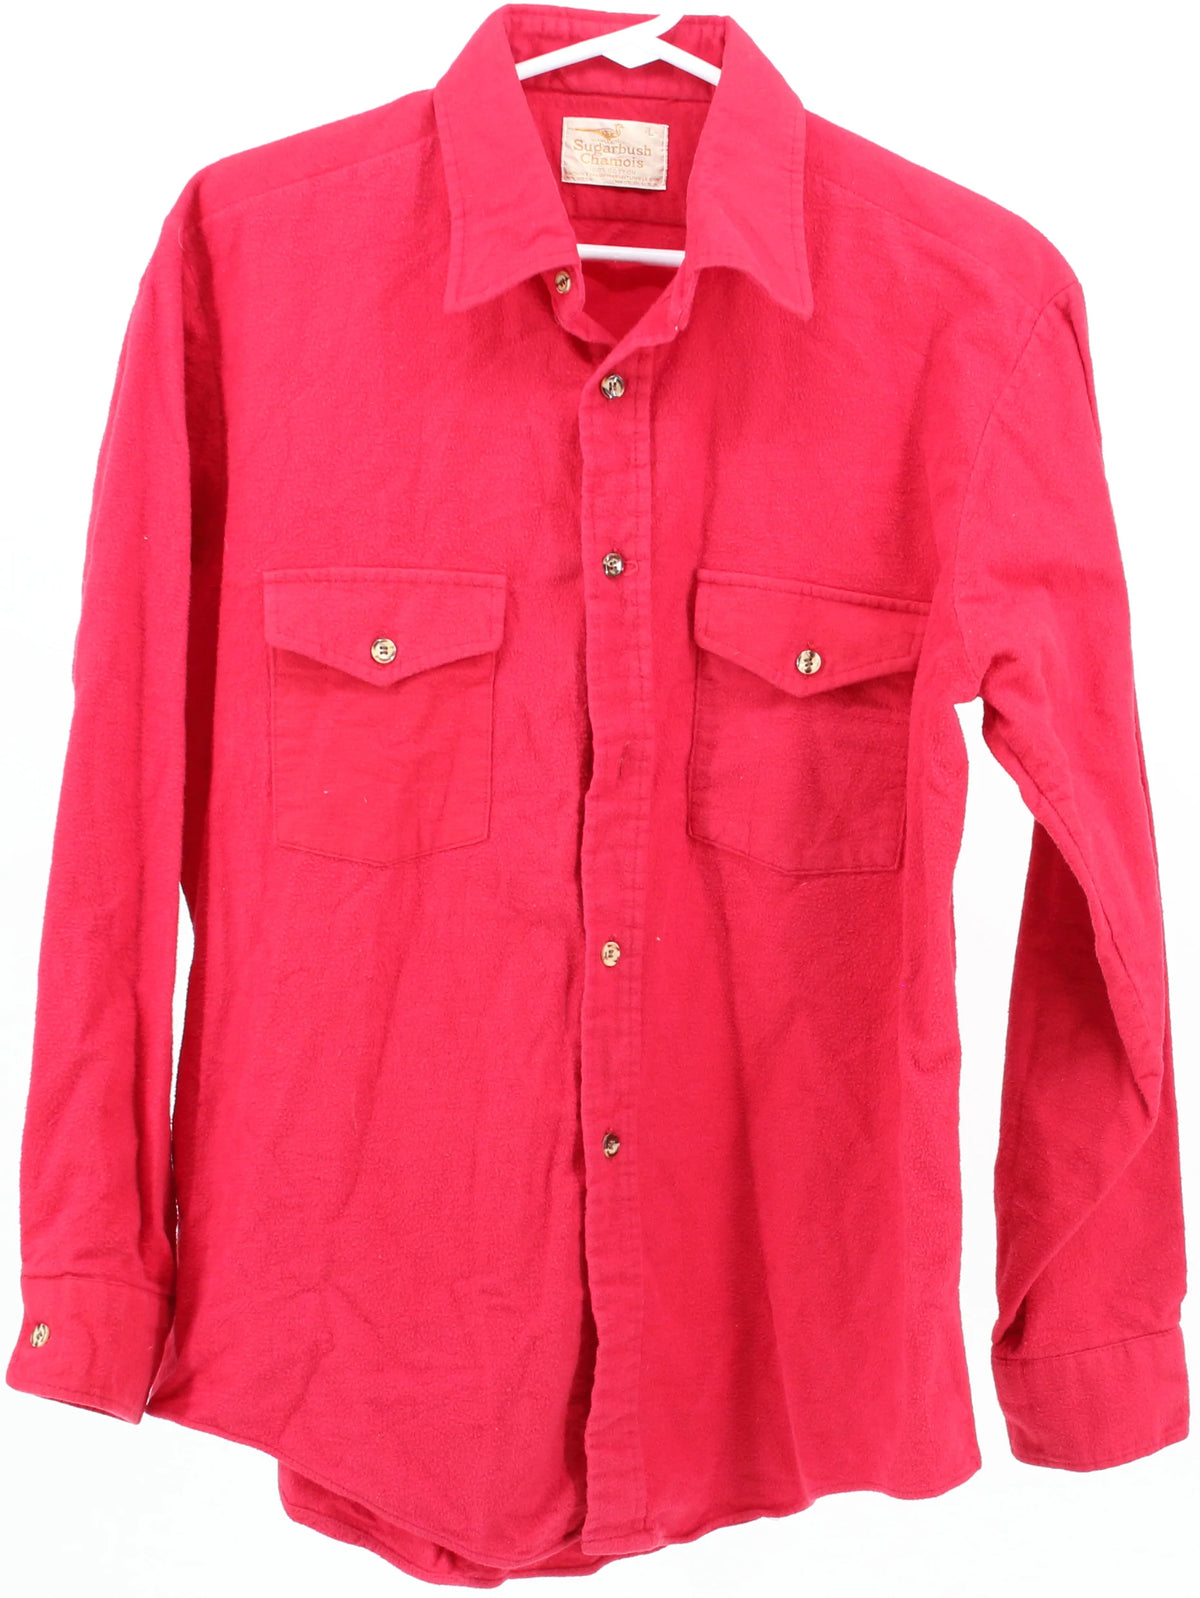 Sugarbush Chamois Red Flannel Shirt